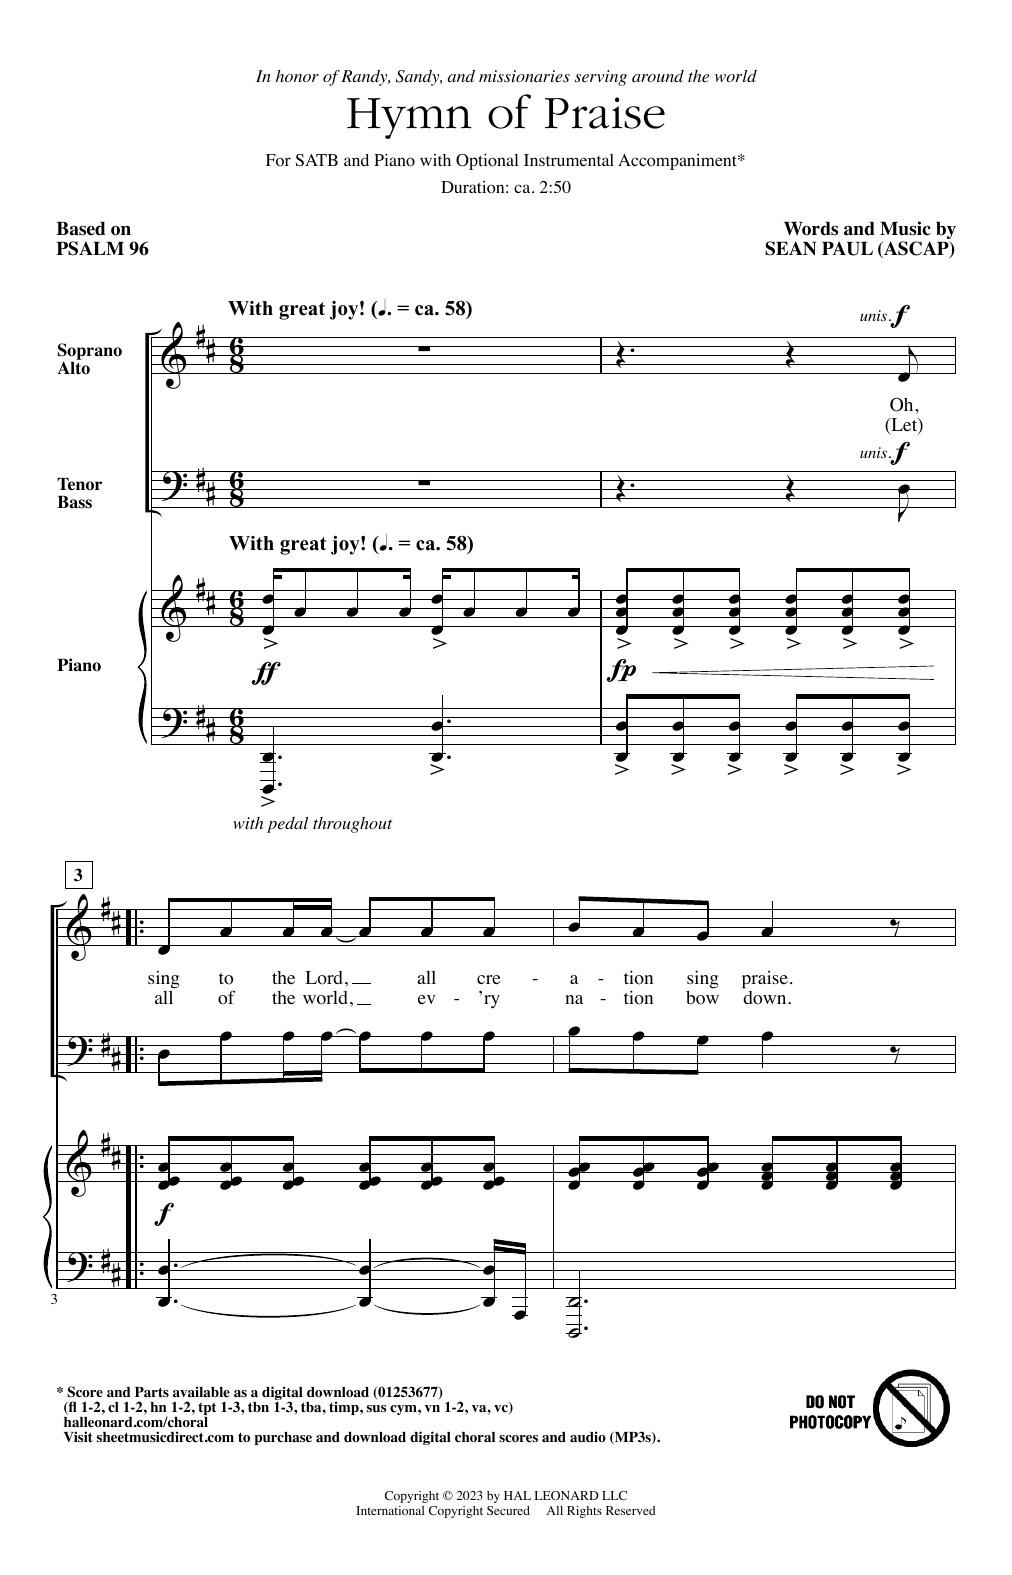 Sean Paul Hymn Of Praise sheet music notes and chords arranged for SATB Choir